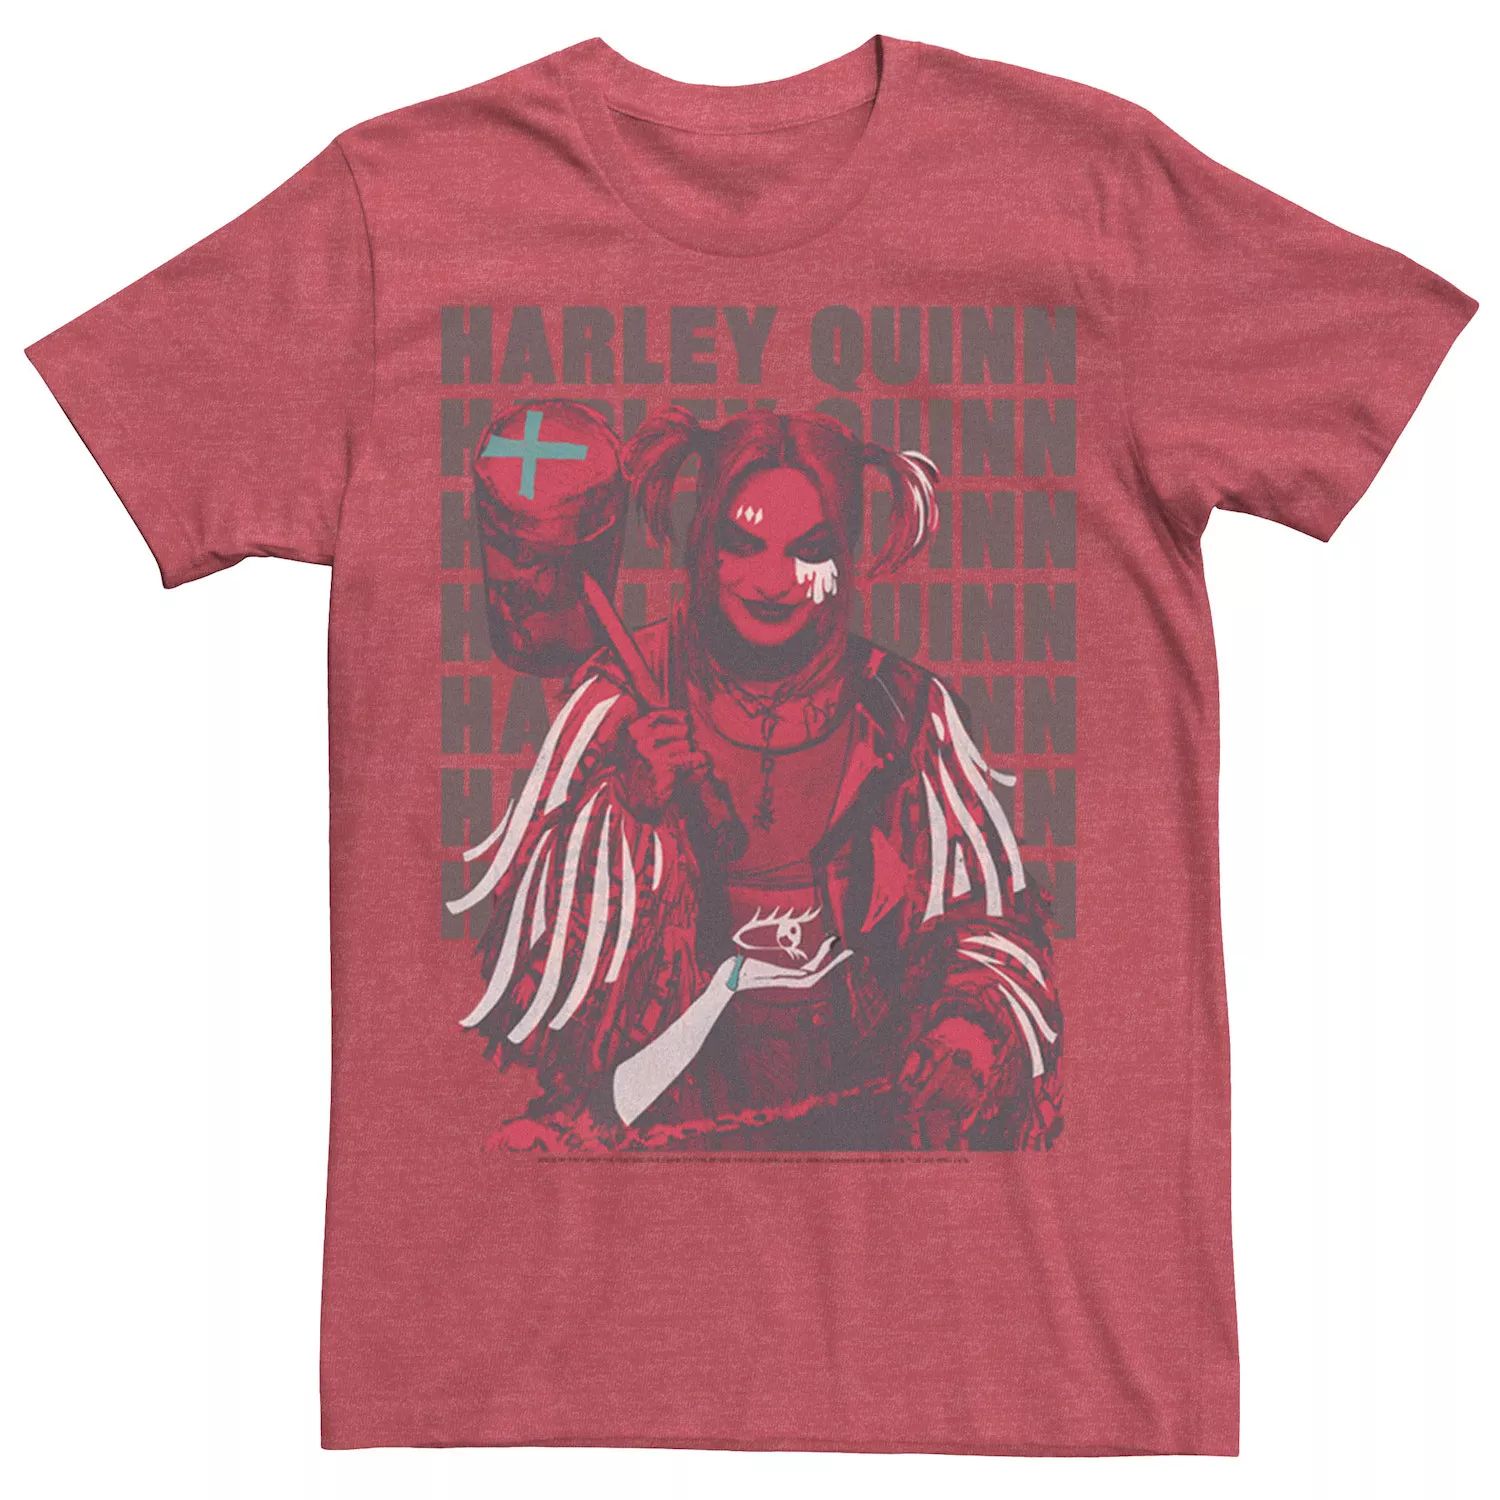 Мужская футболка Harley Quinn: Birds of Prey с надписью Licensed Character